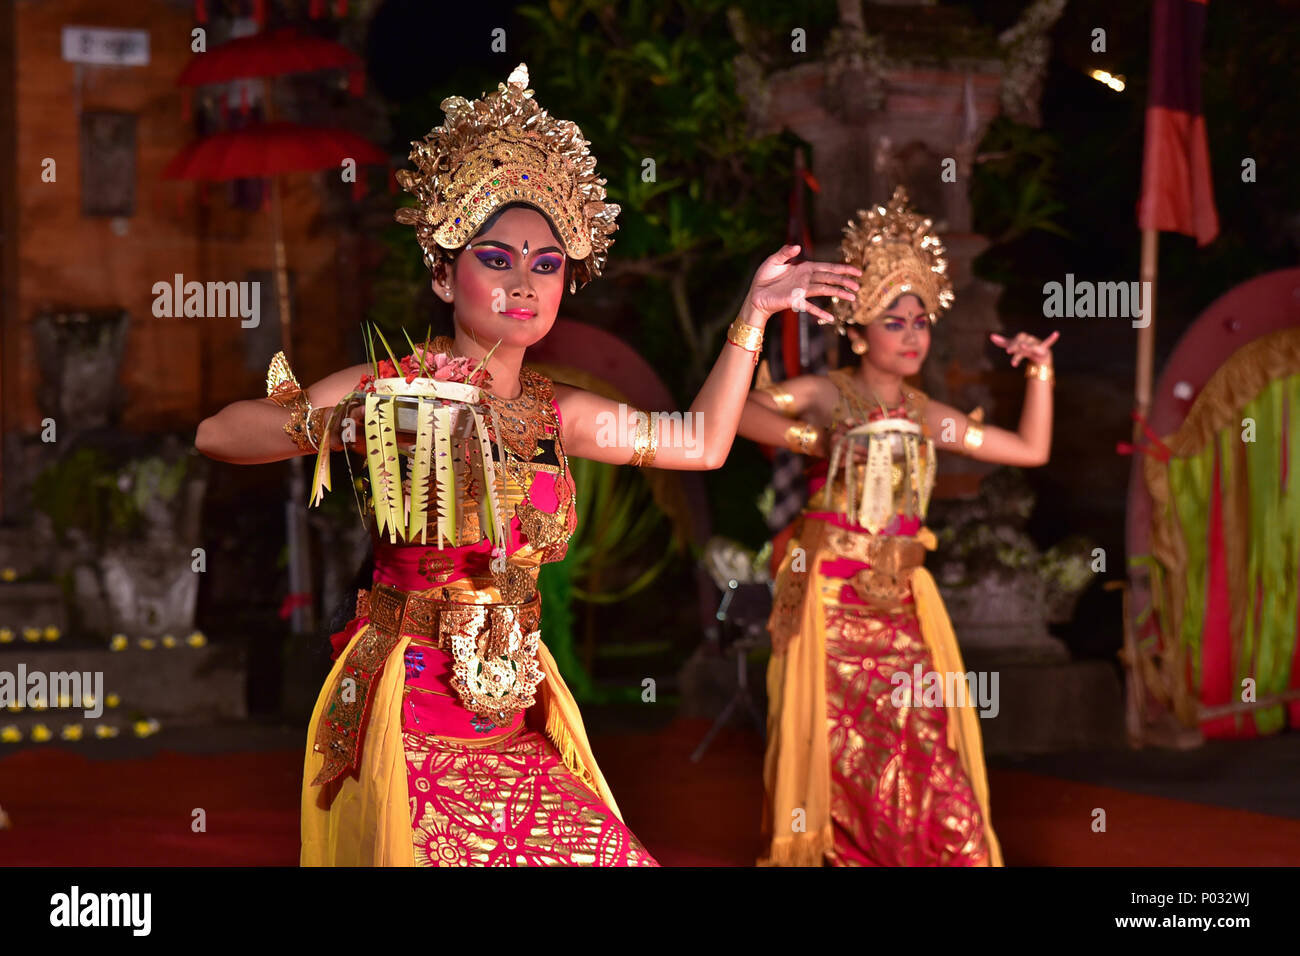 Künstler des balinesischen Tanzes, eine alte Tanztradition auf der Insel Bali, Indonesien Stockfoto